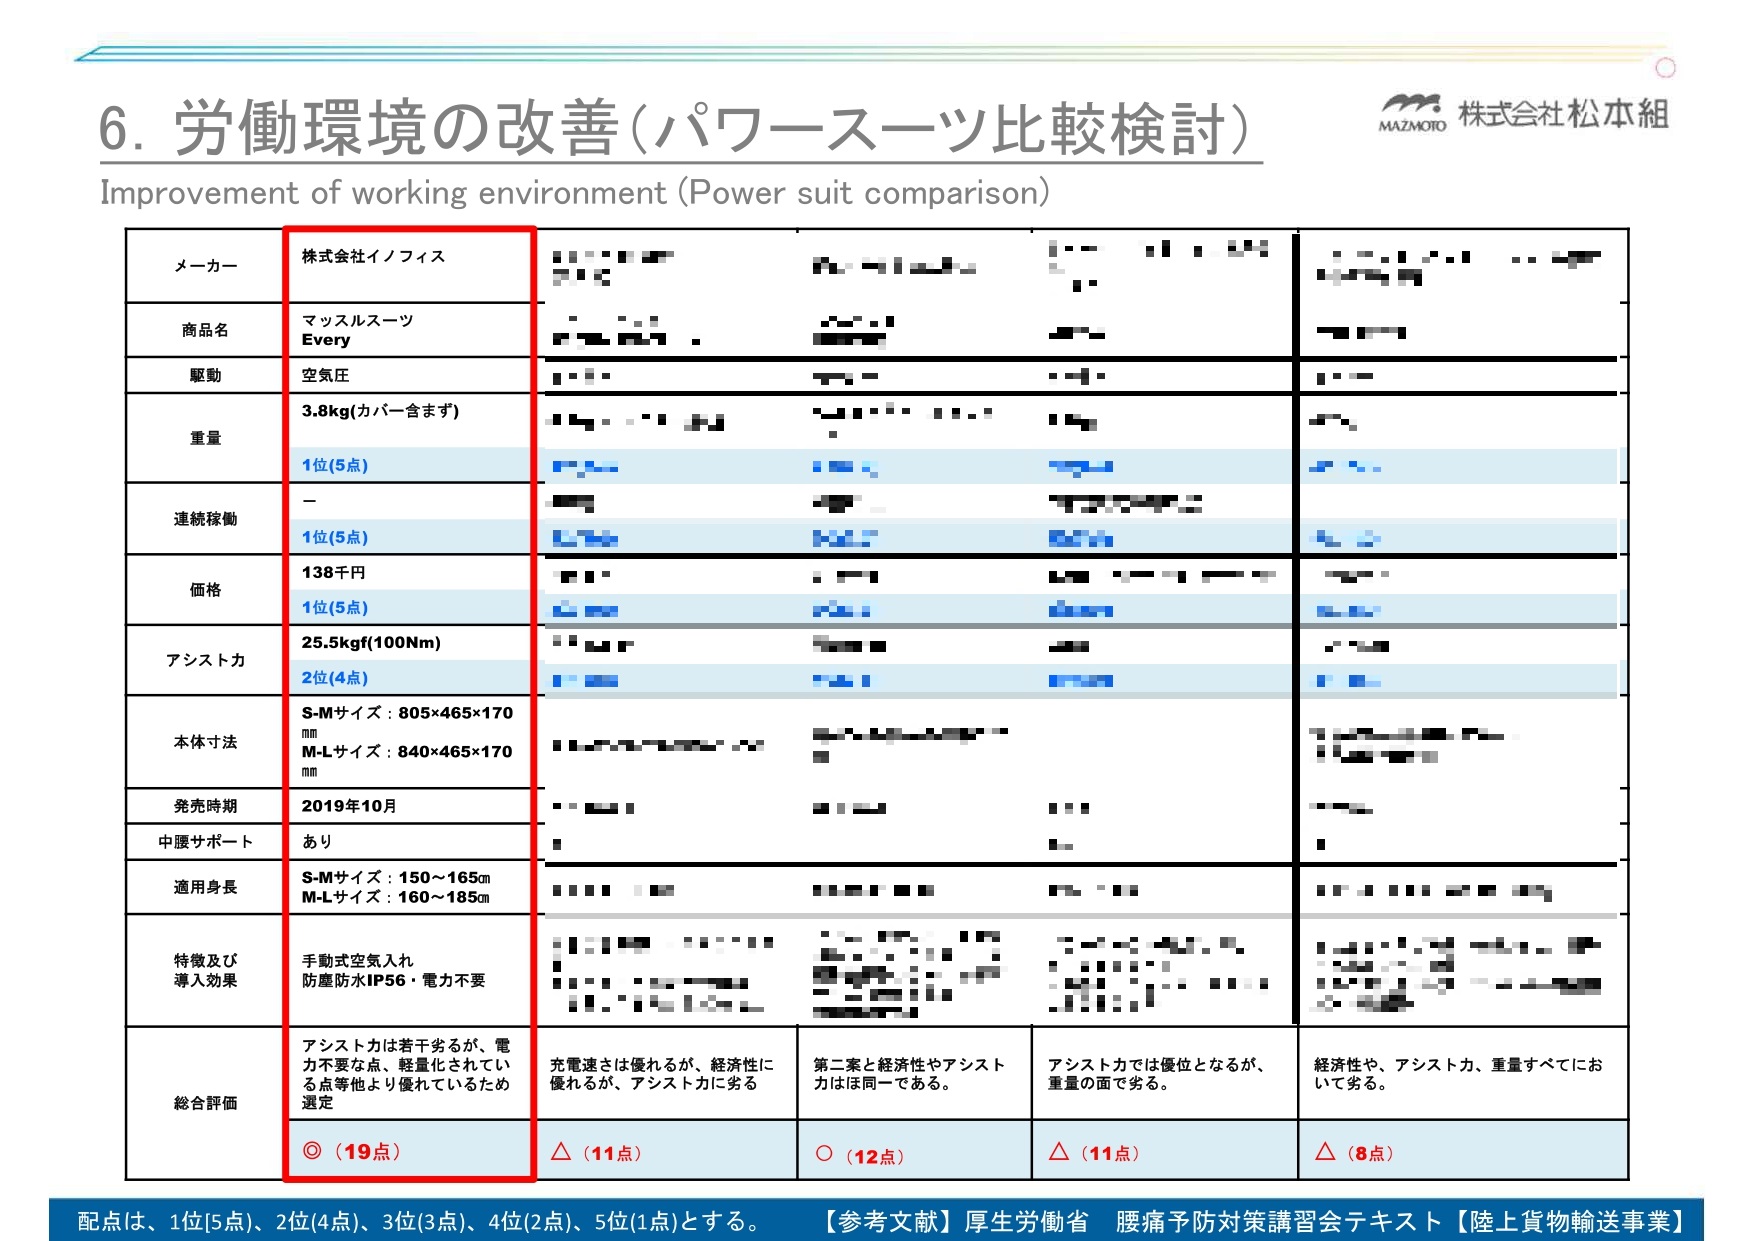 松本さんが作成したアシストスーツ各社の比較表